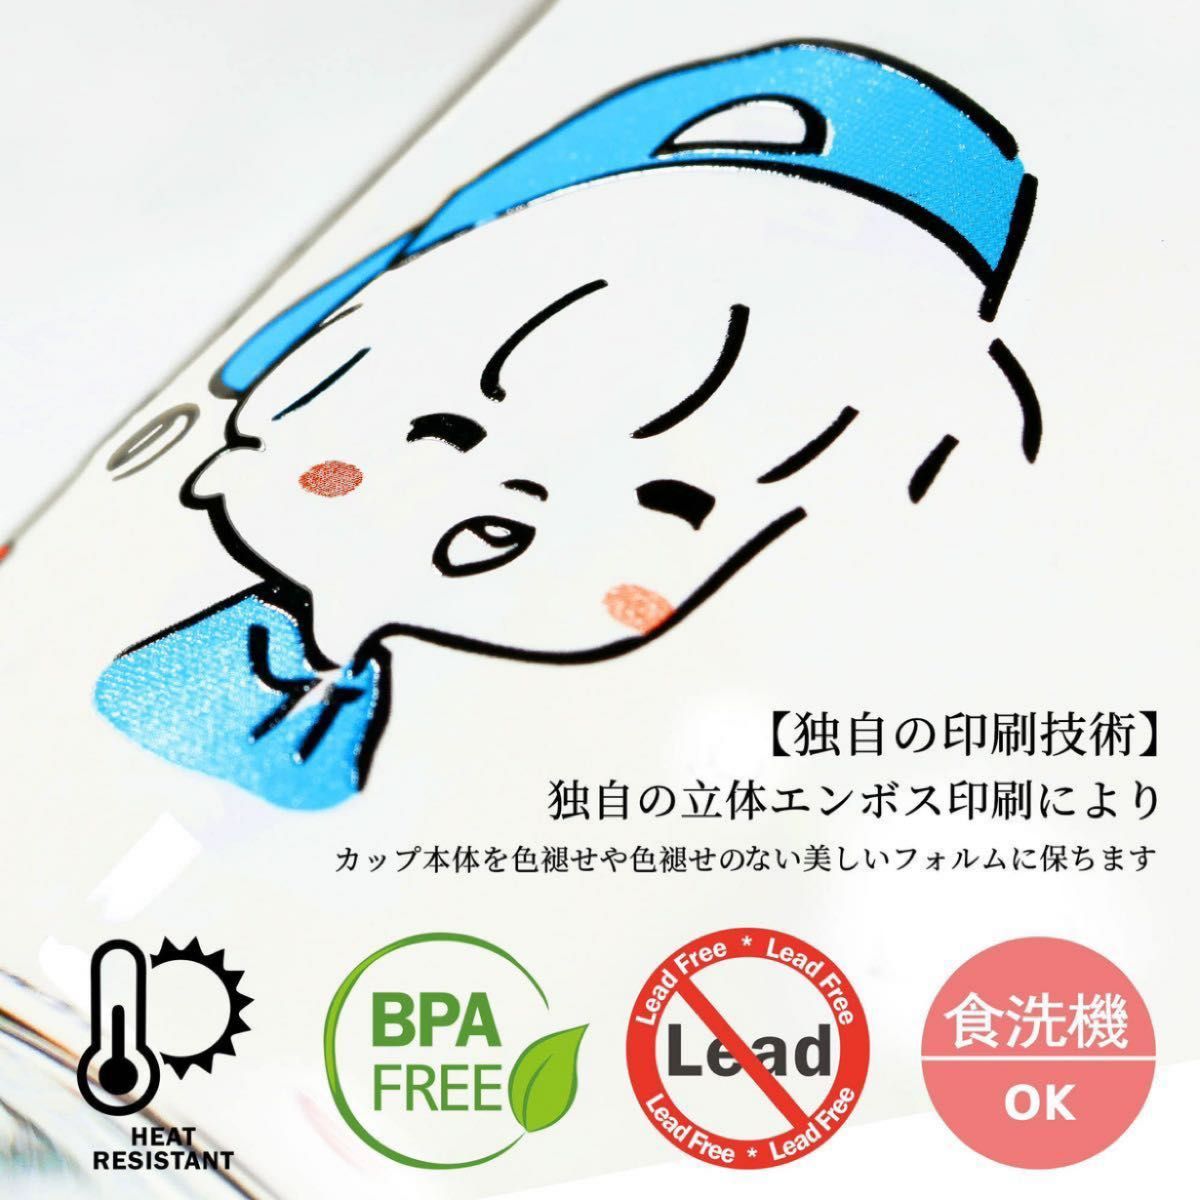 【2個セット】耐熱ガラス コップ スープ 食洗機対応 電子レンジ オーブン 400ml ガラスマグ コーヒーコップ 猫 マグカップ